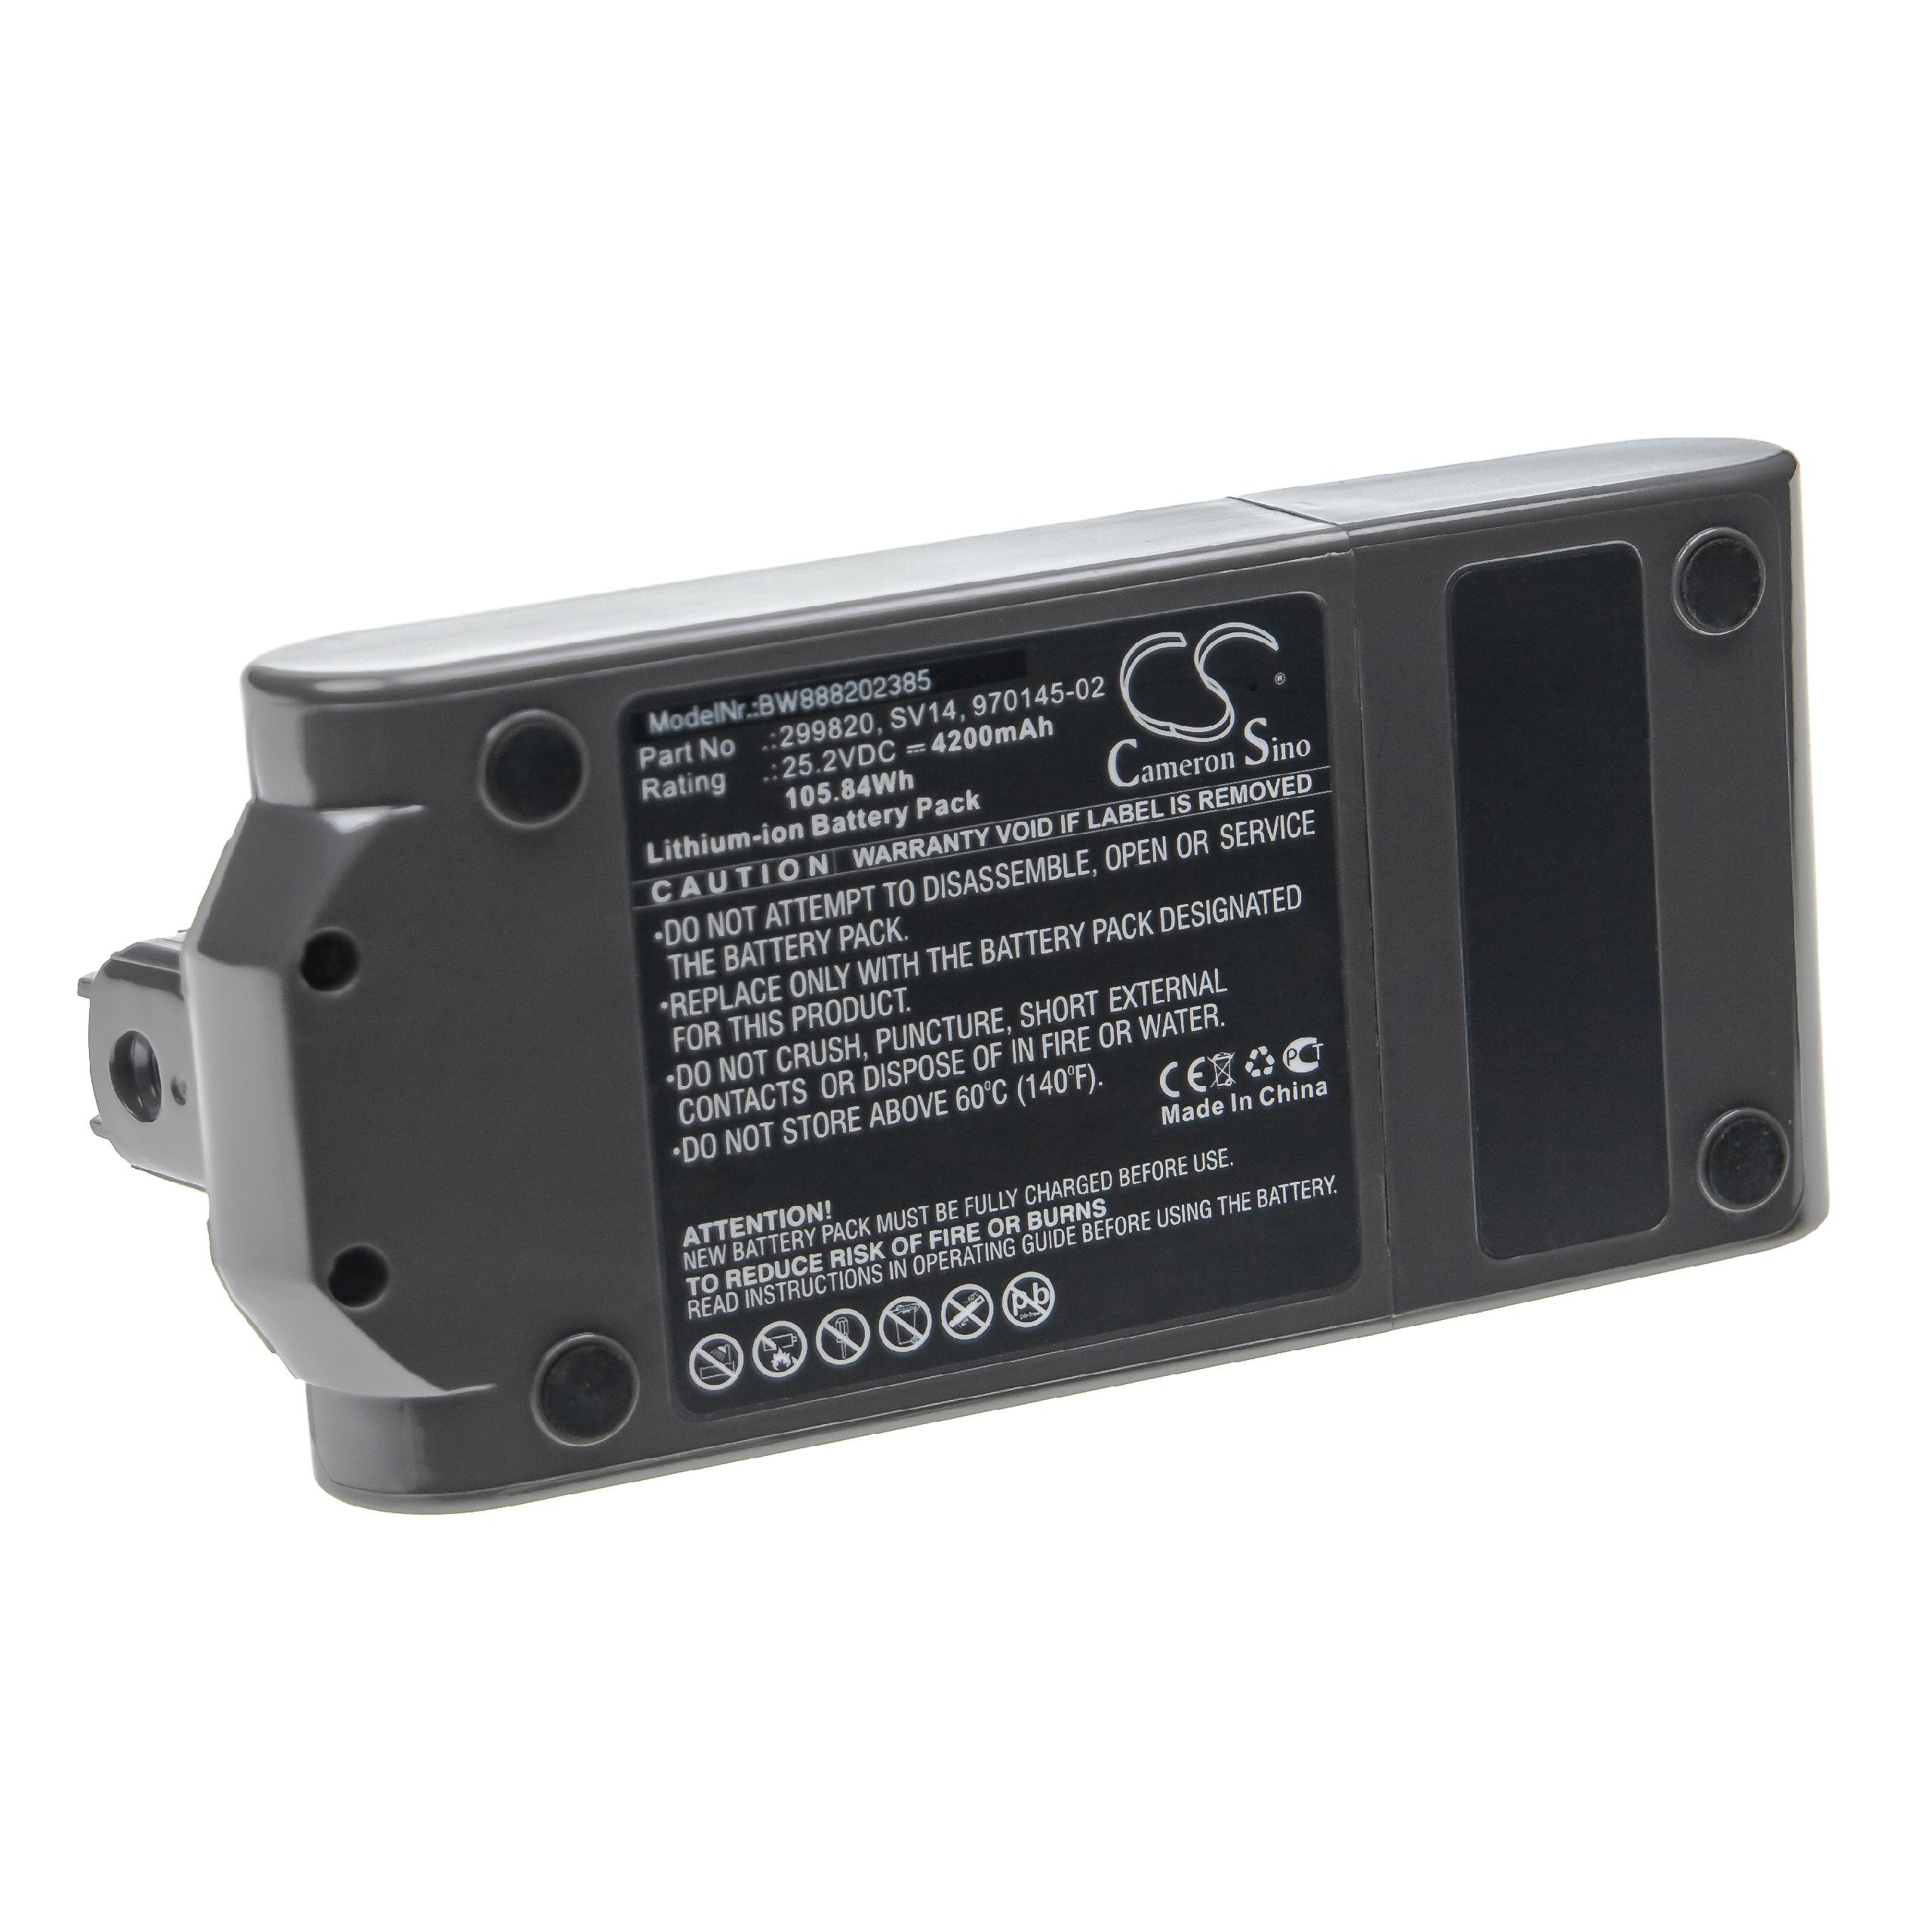 Batería reemplaza Dyson 970145-02, 299820 para aspiradora Dyson - 4200 mAh 25,2 V Li-Ion gris antracita